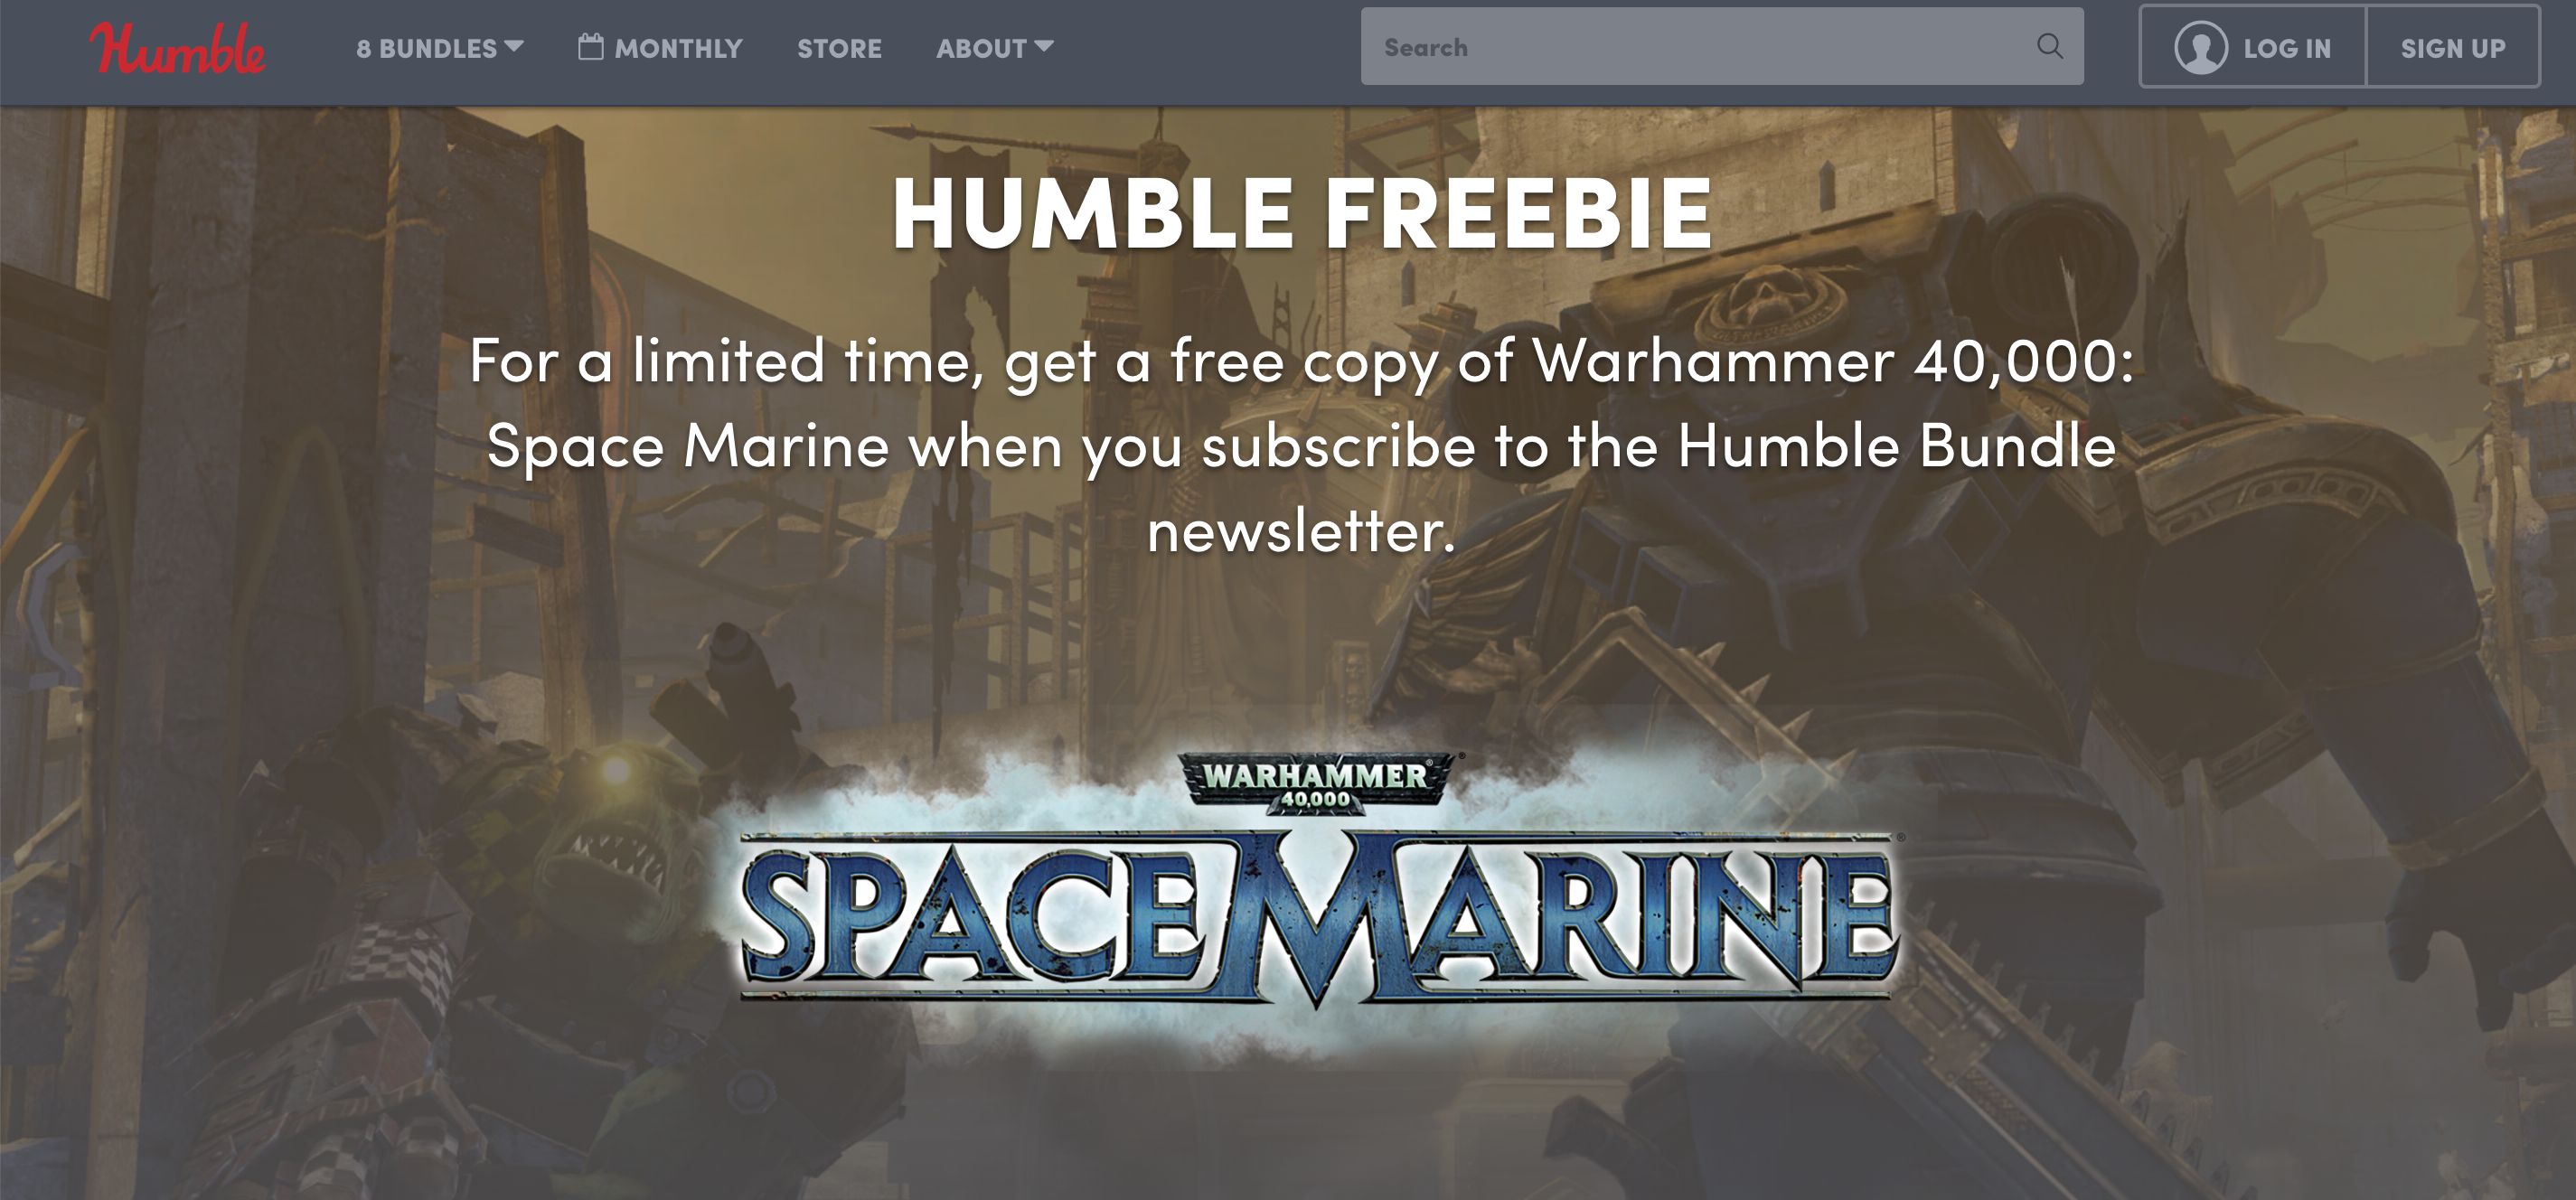 WARHAMMER 40,000: SPACE MARINE tựa game $29.99 hiện đang miễn phí